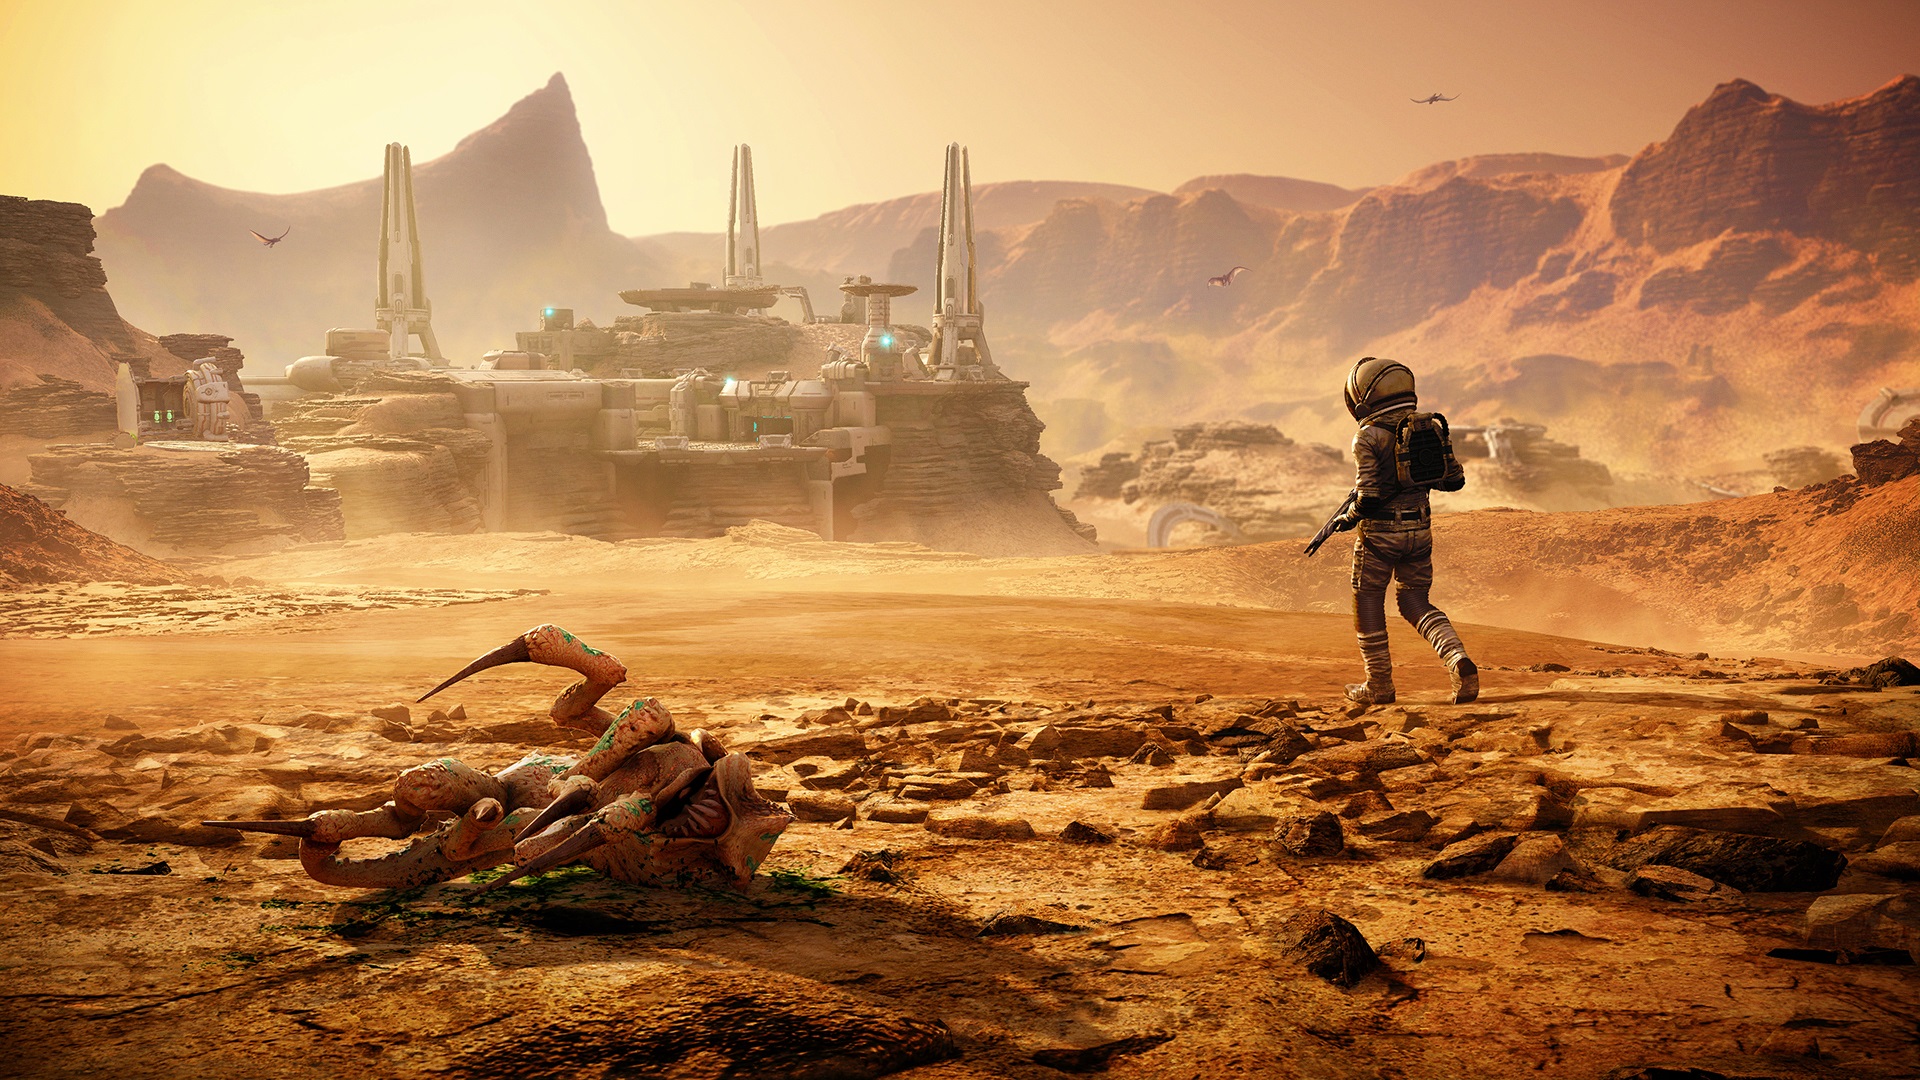 Memories of Mars, supervivencia en mundo abierto, ya disponible en PS4, Xbox One y PC